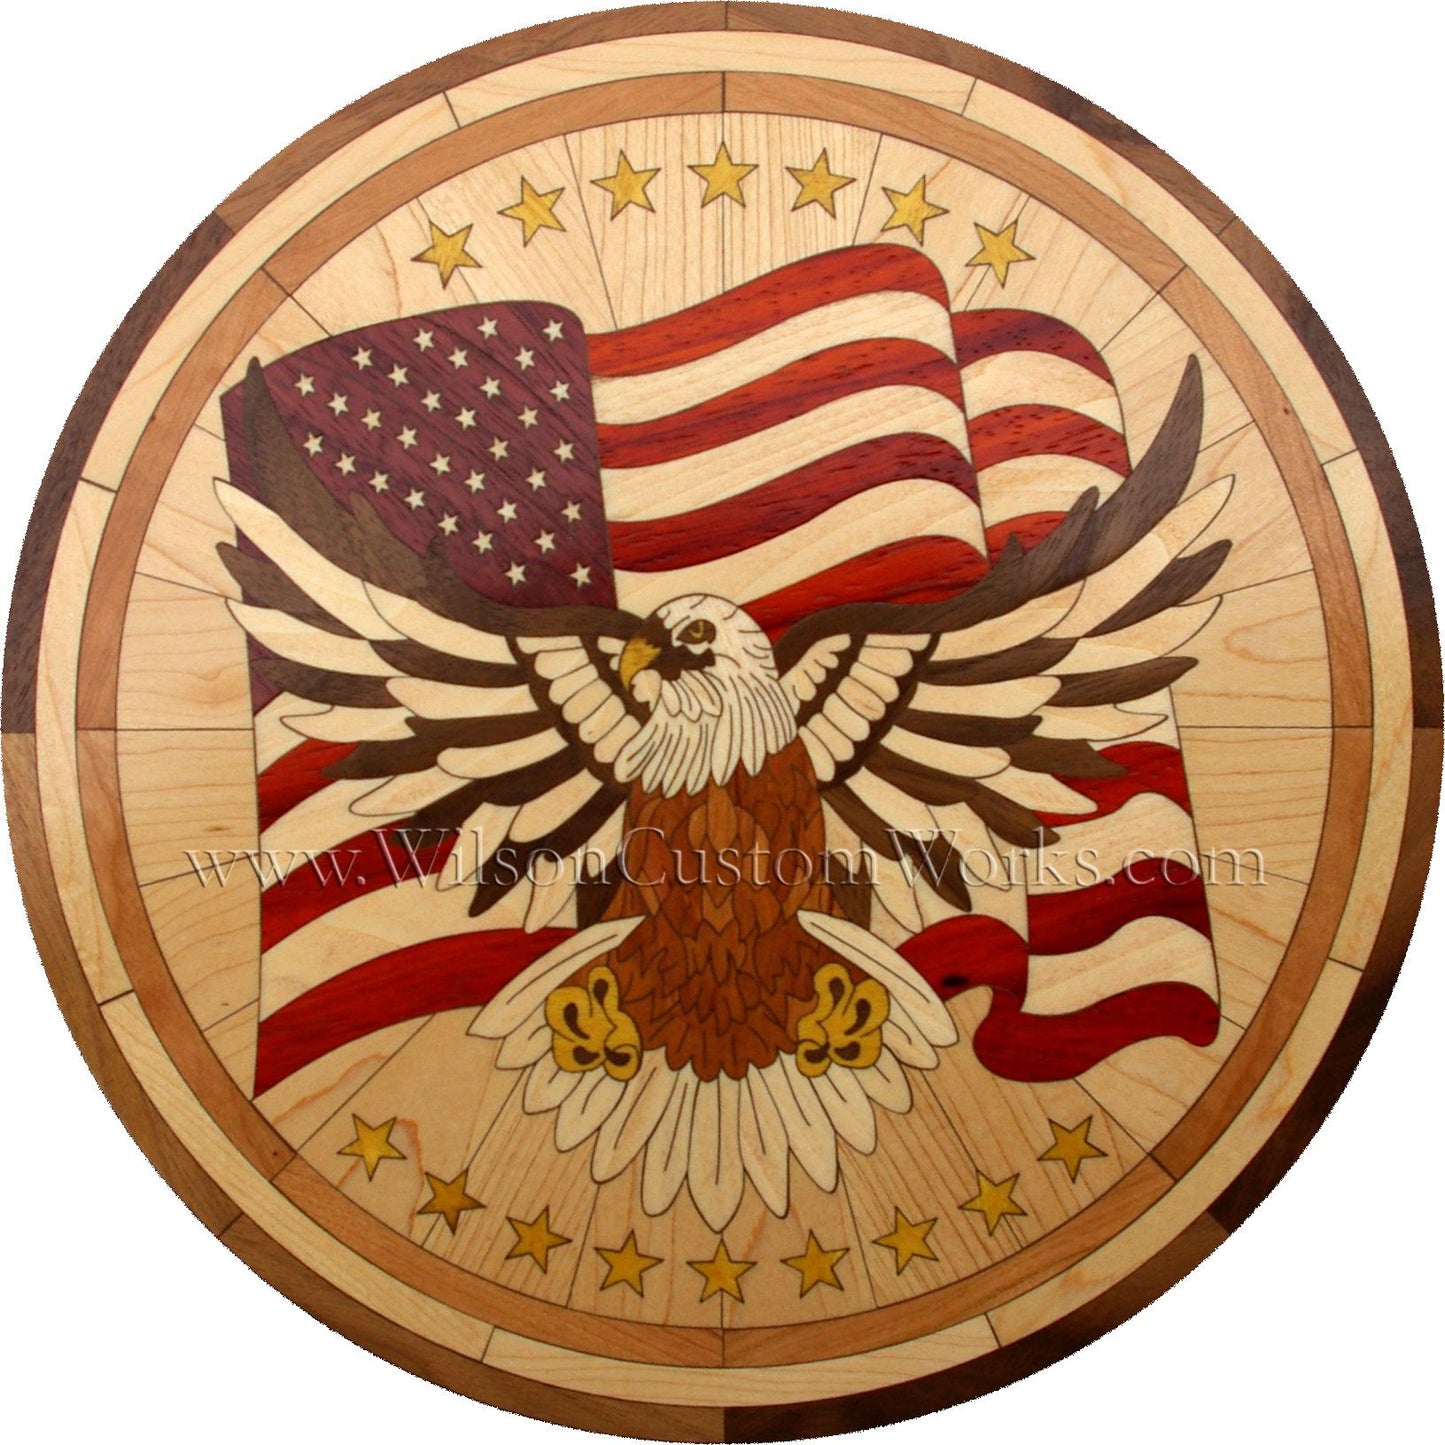 Wilson Custom Works hardwood wood floor inlay medallion proud eagle patriotic design